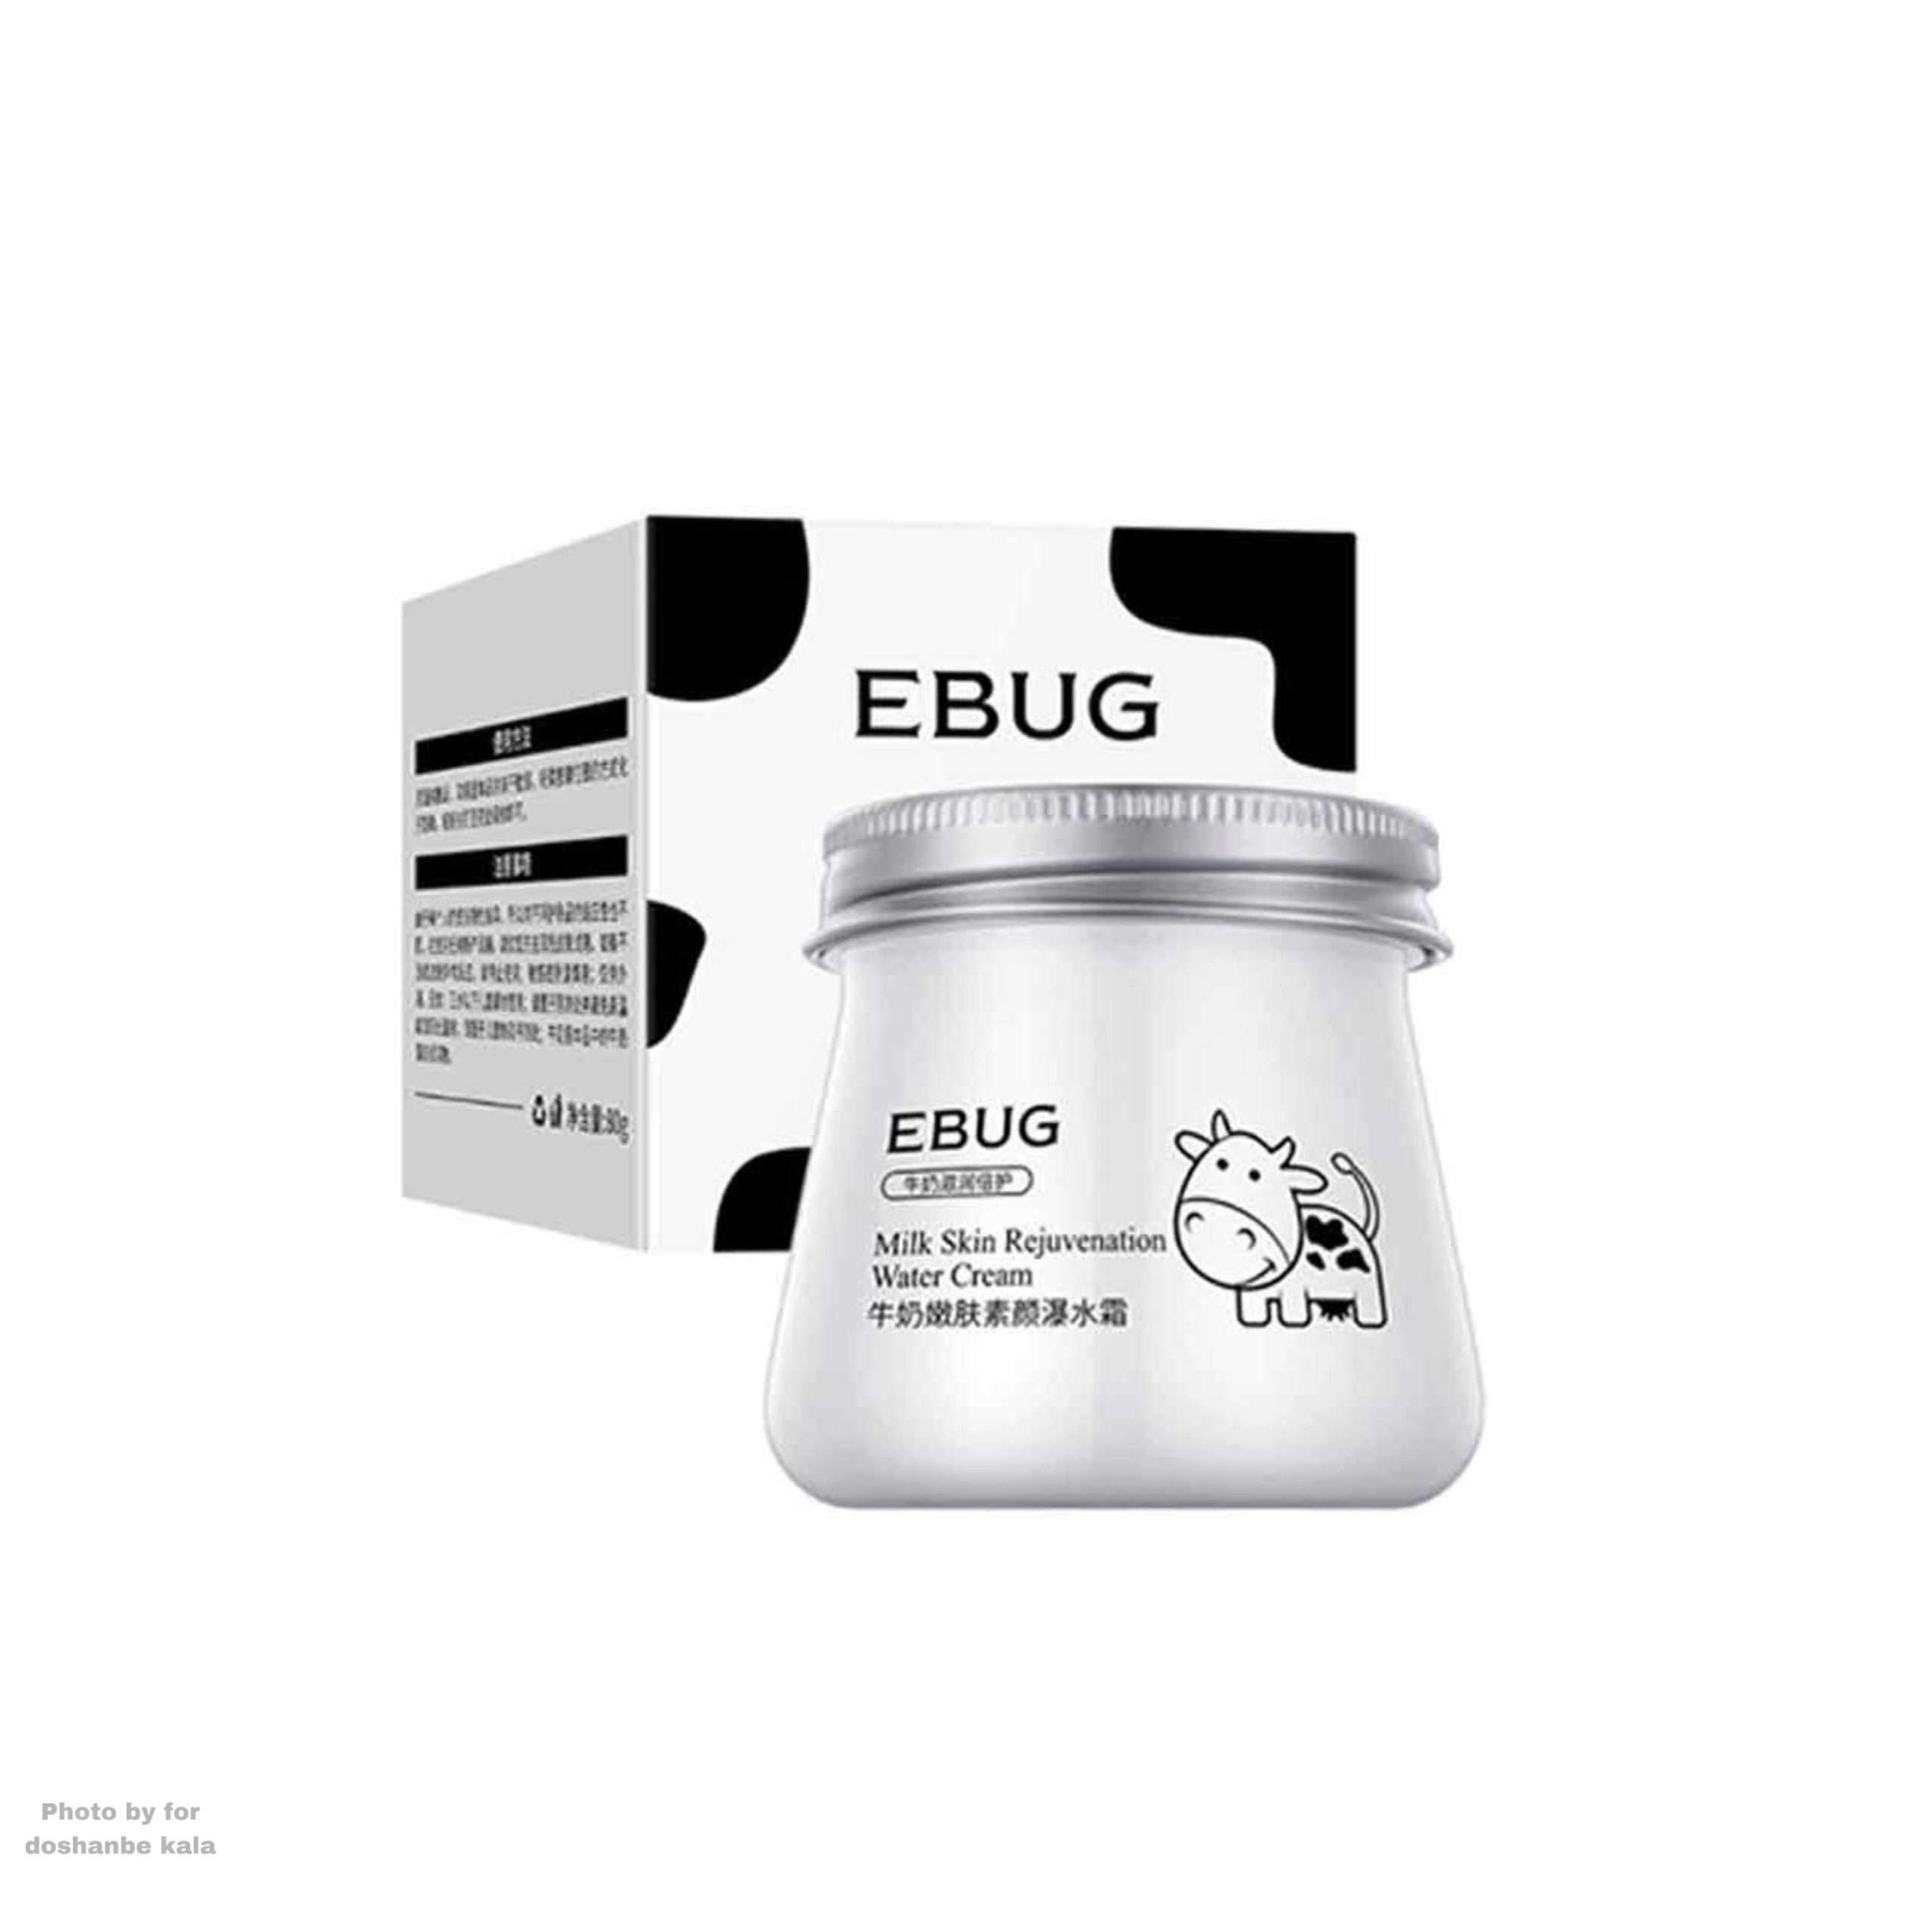 خرید انلاین کرم ابرسان شیر گاو حجم 80 گرمی EBUG در وبسایت دوشنبه کالا